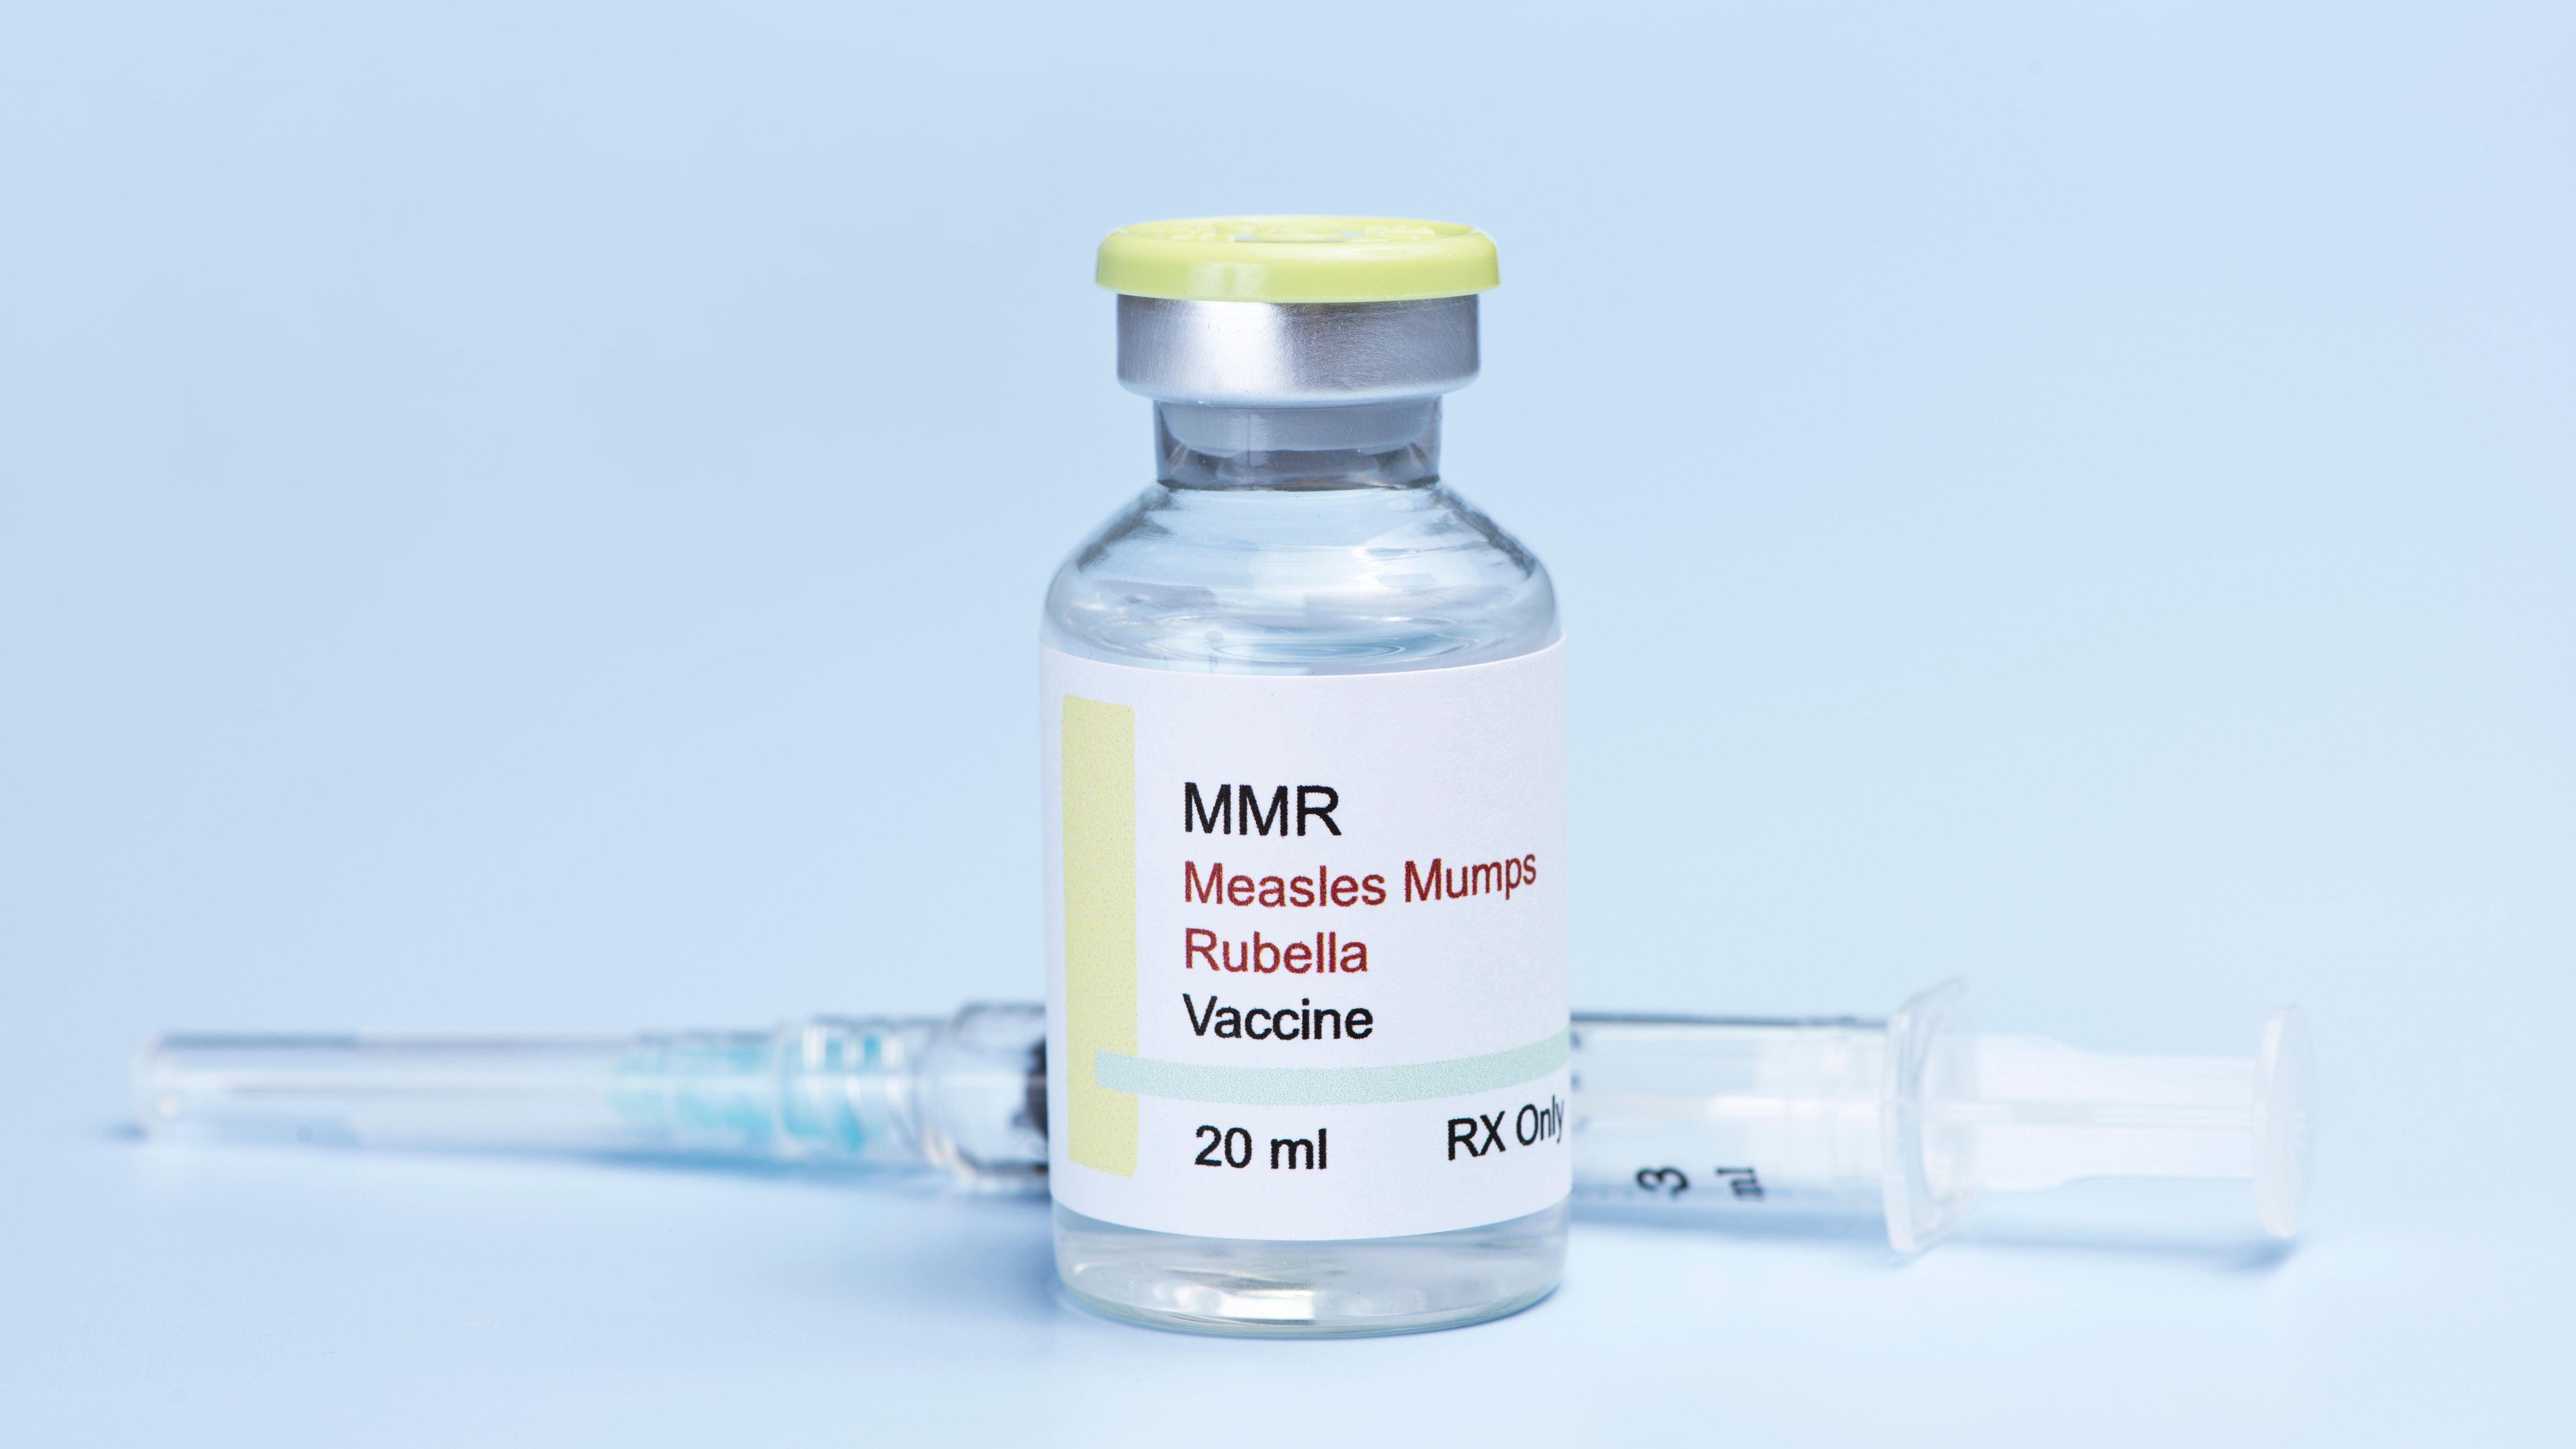 Импортная вакцина от кори. Вакцина от кори MMR 2. Корь краснуха паротит вакцина MMR 2. Прививка корь краснуха паротит MMR. MMR 2 вакцина производитель.